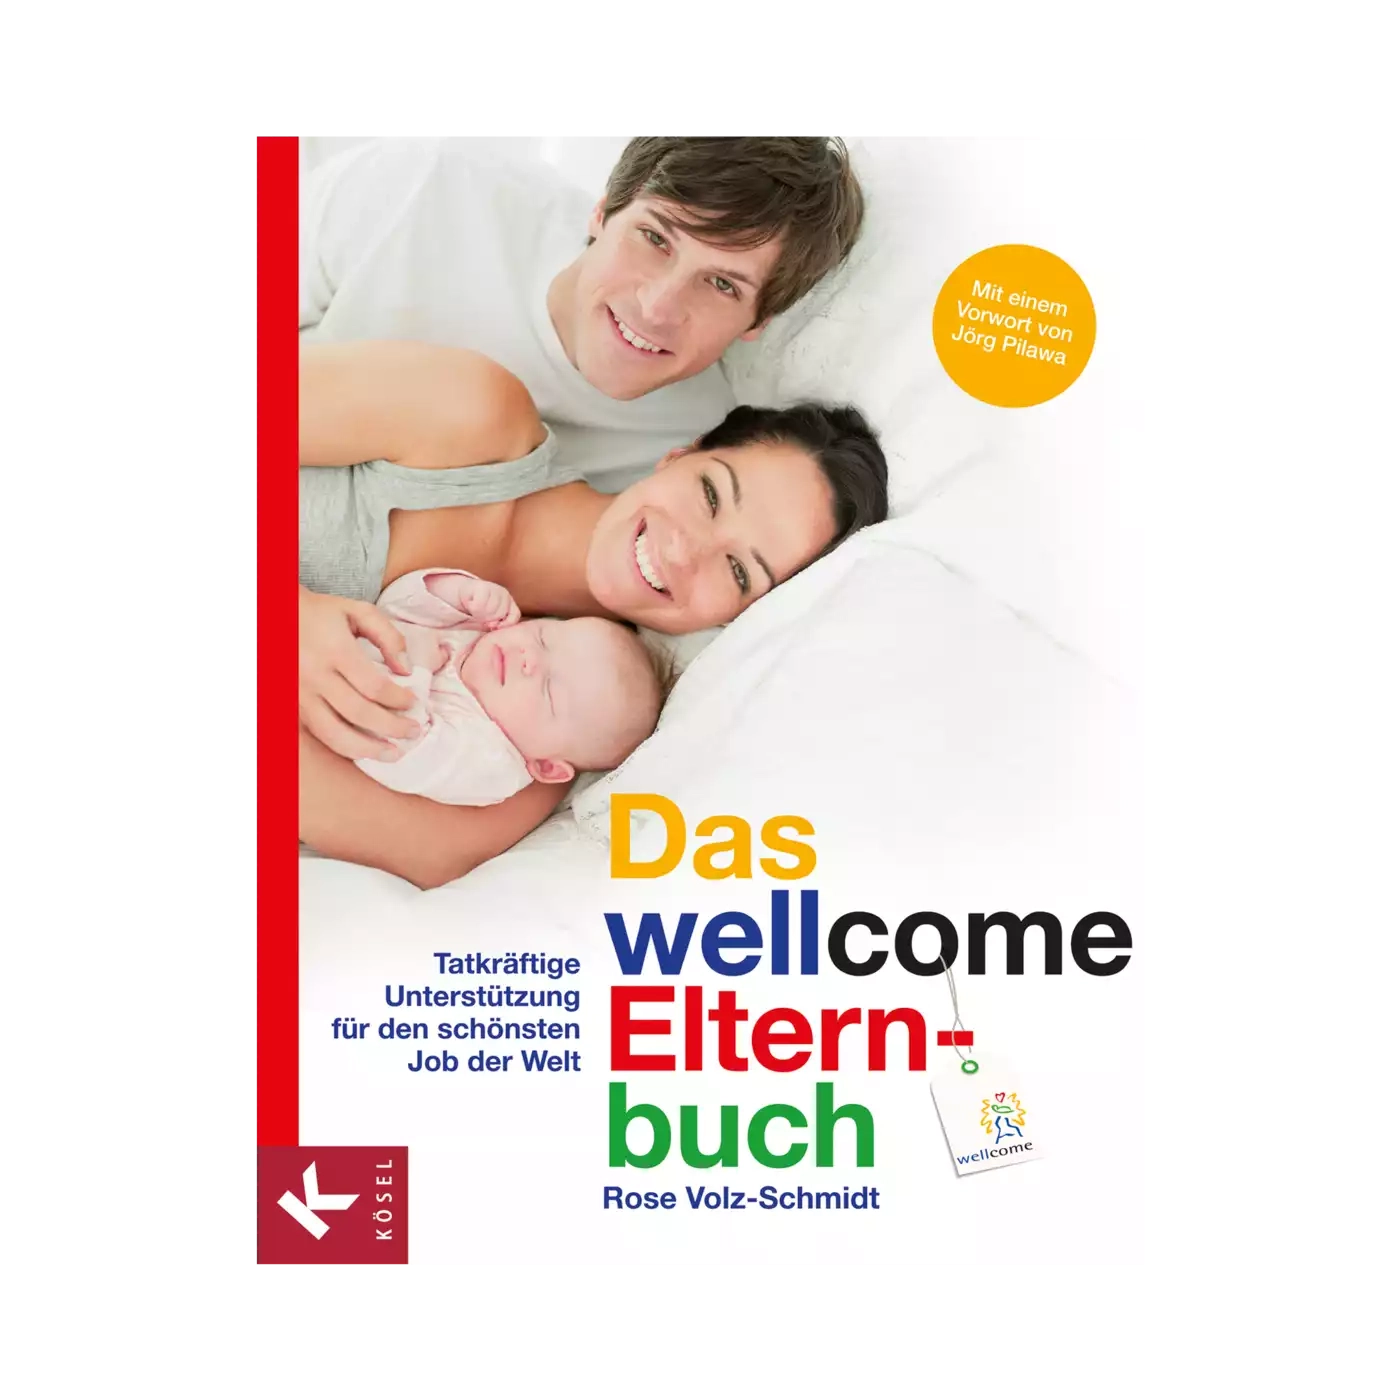 Das wellcome - Elternbuch KÖSEL 2000561649203 1